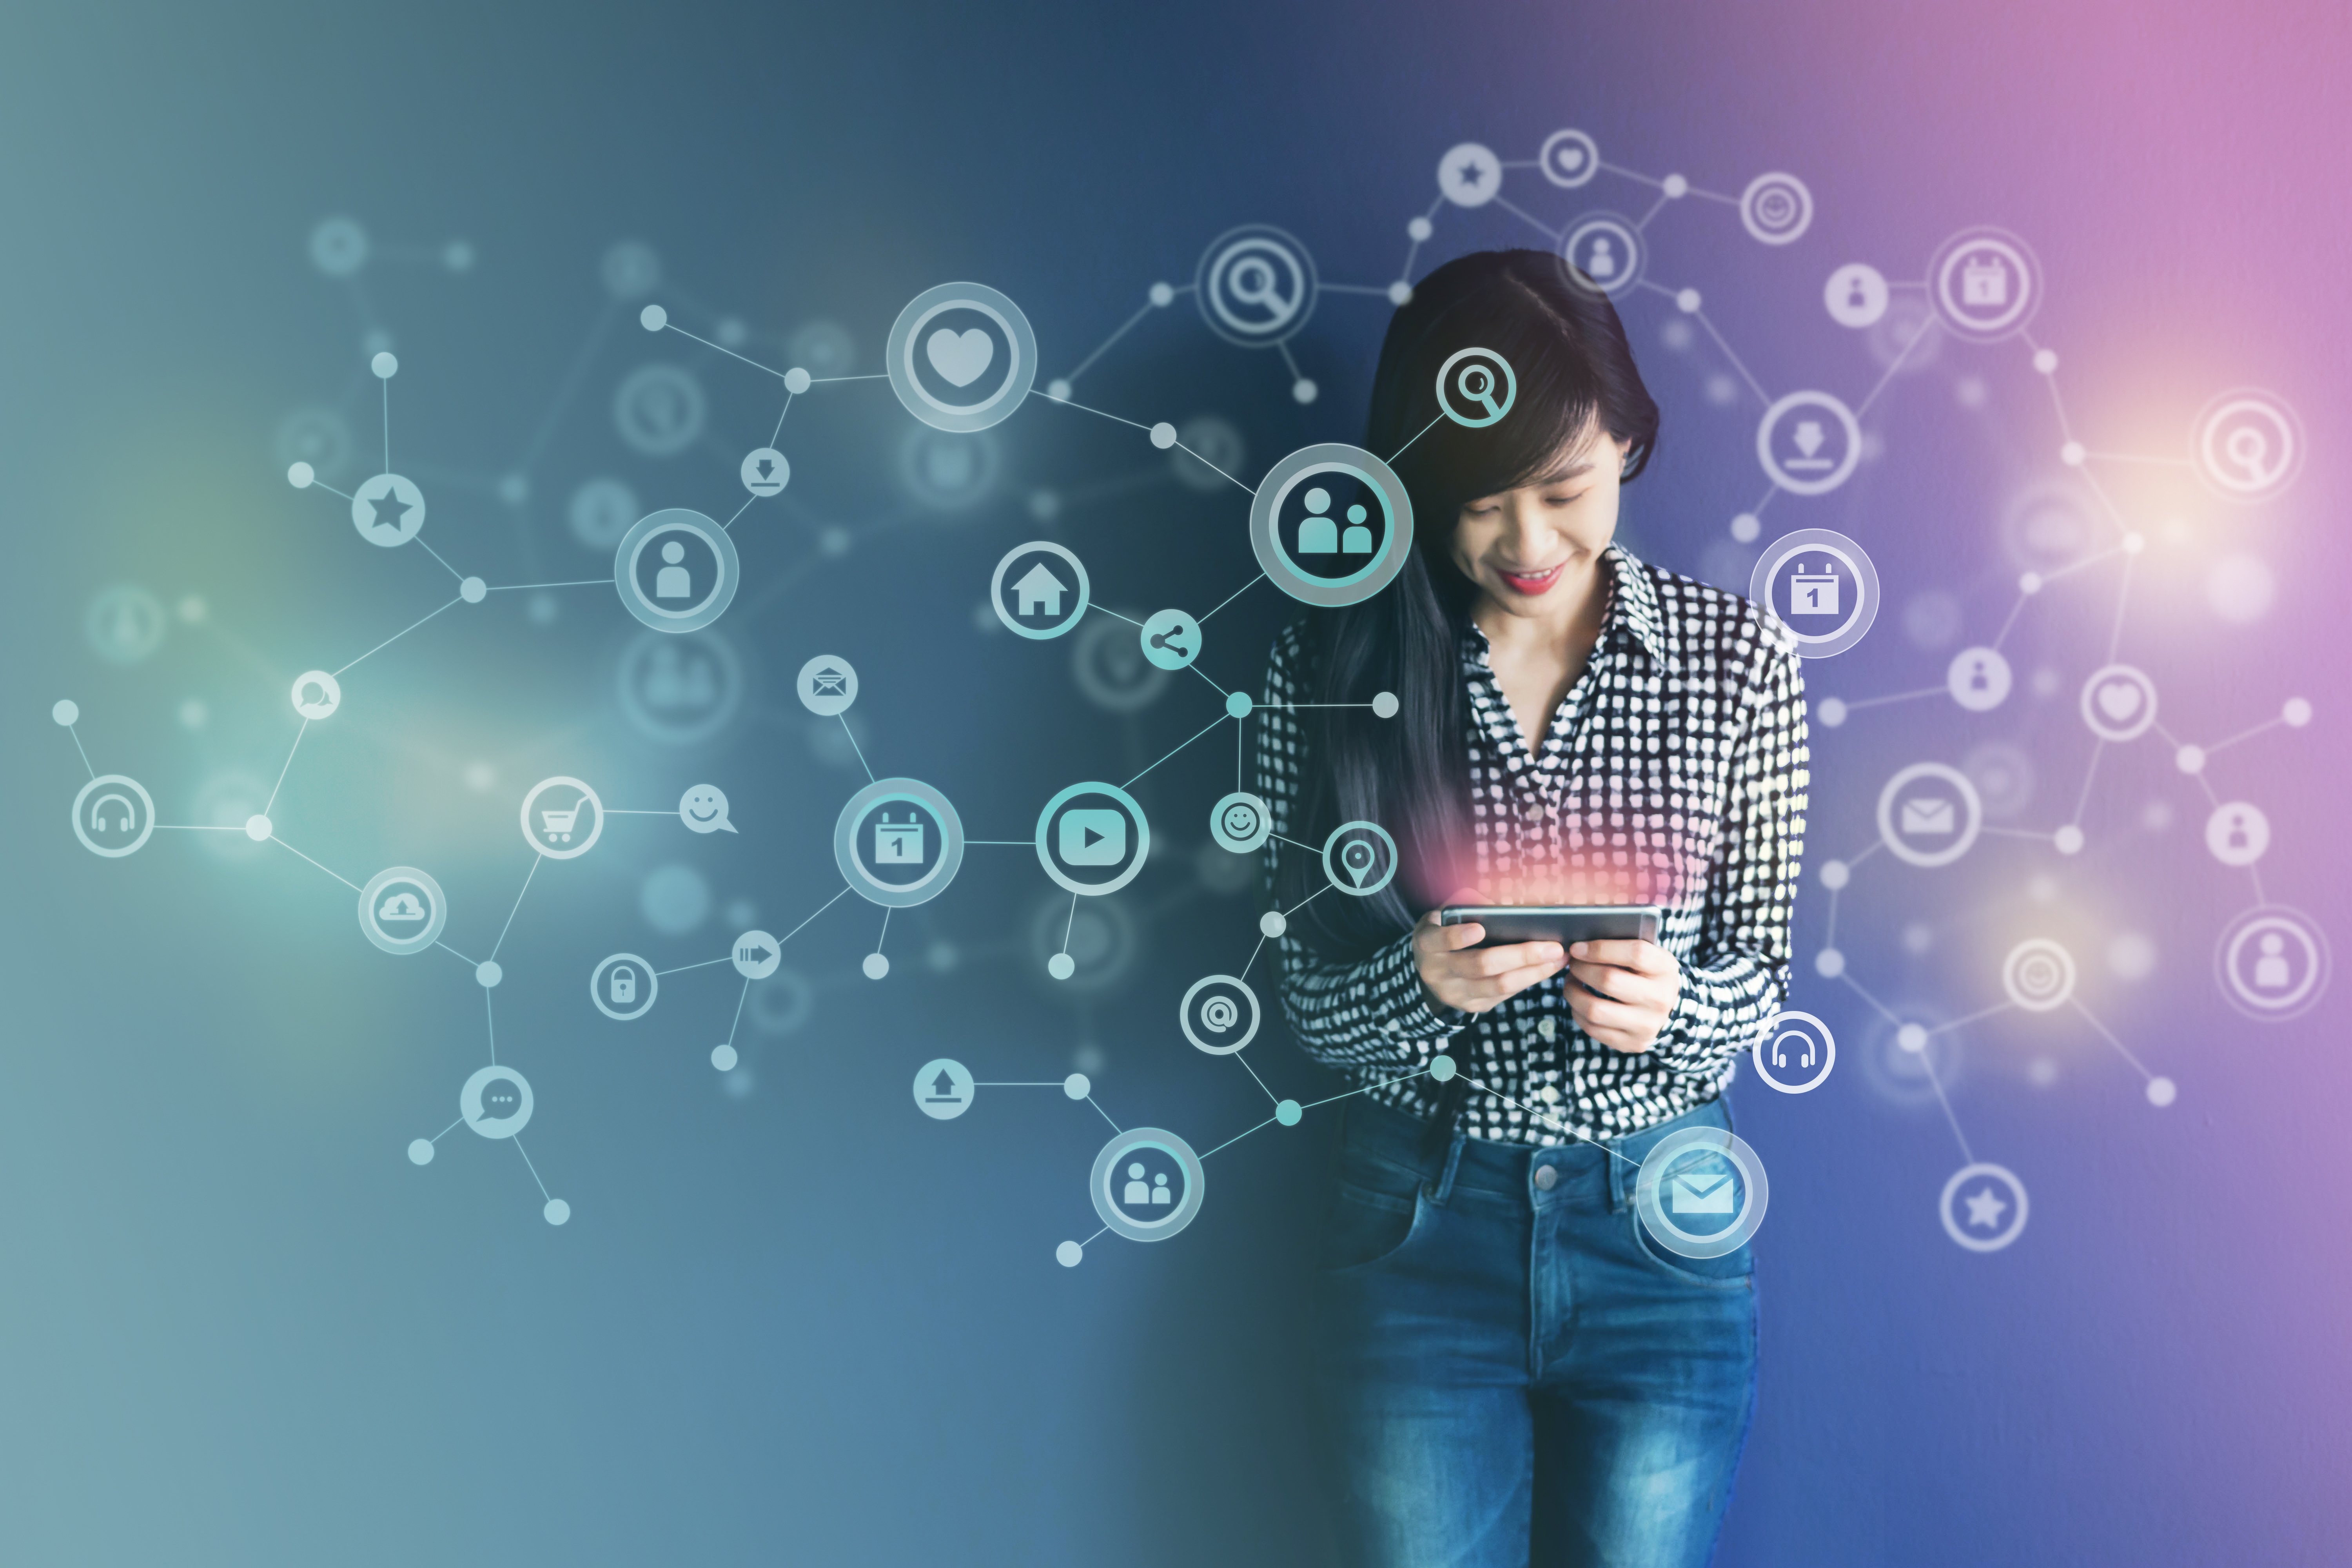 Mulher em pé olhando para um tablet em um fundo desfocado de cores azul e lilás, com ícones voadores interconectando com uma rede de comunicação